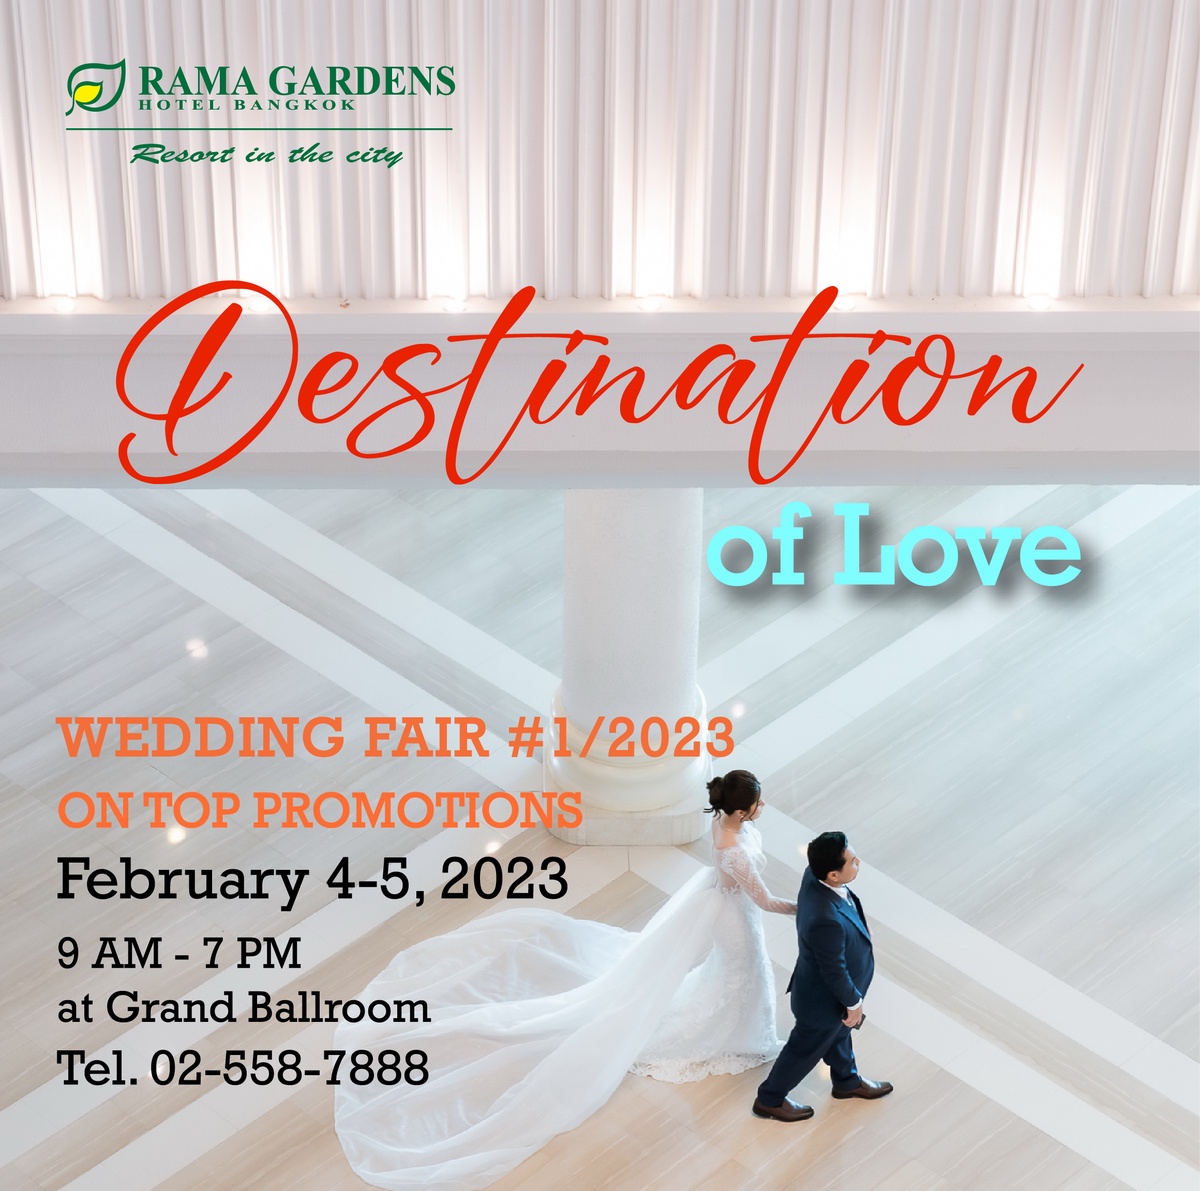 Destination of Love Wedding Fair 2023 ครั้งที่ 1 เวดดิ้งแฟร์ครั้งแรกแห่งปี จัดใหญ่ จัดเต็ม!! ที่โรงแรมรามา การ์เด้นส์